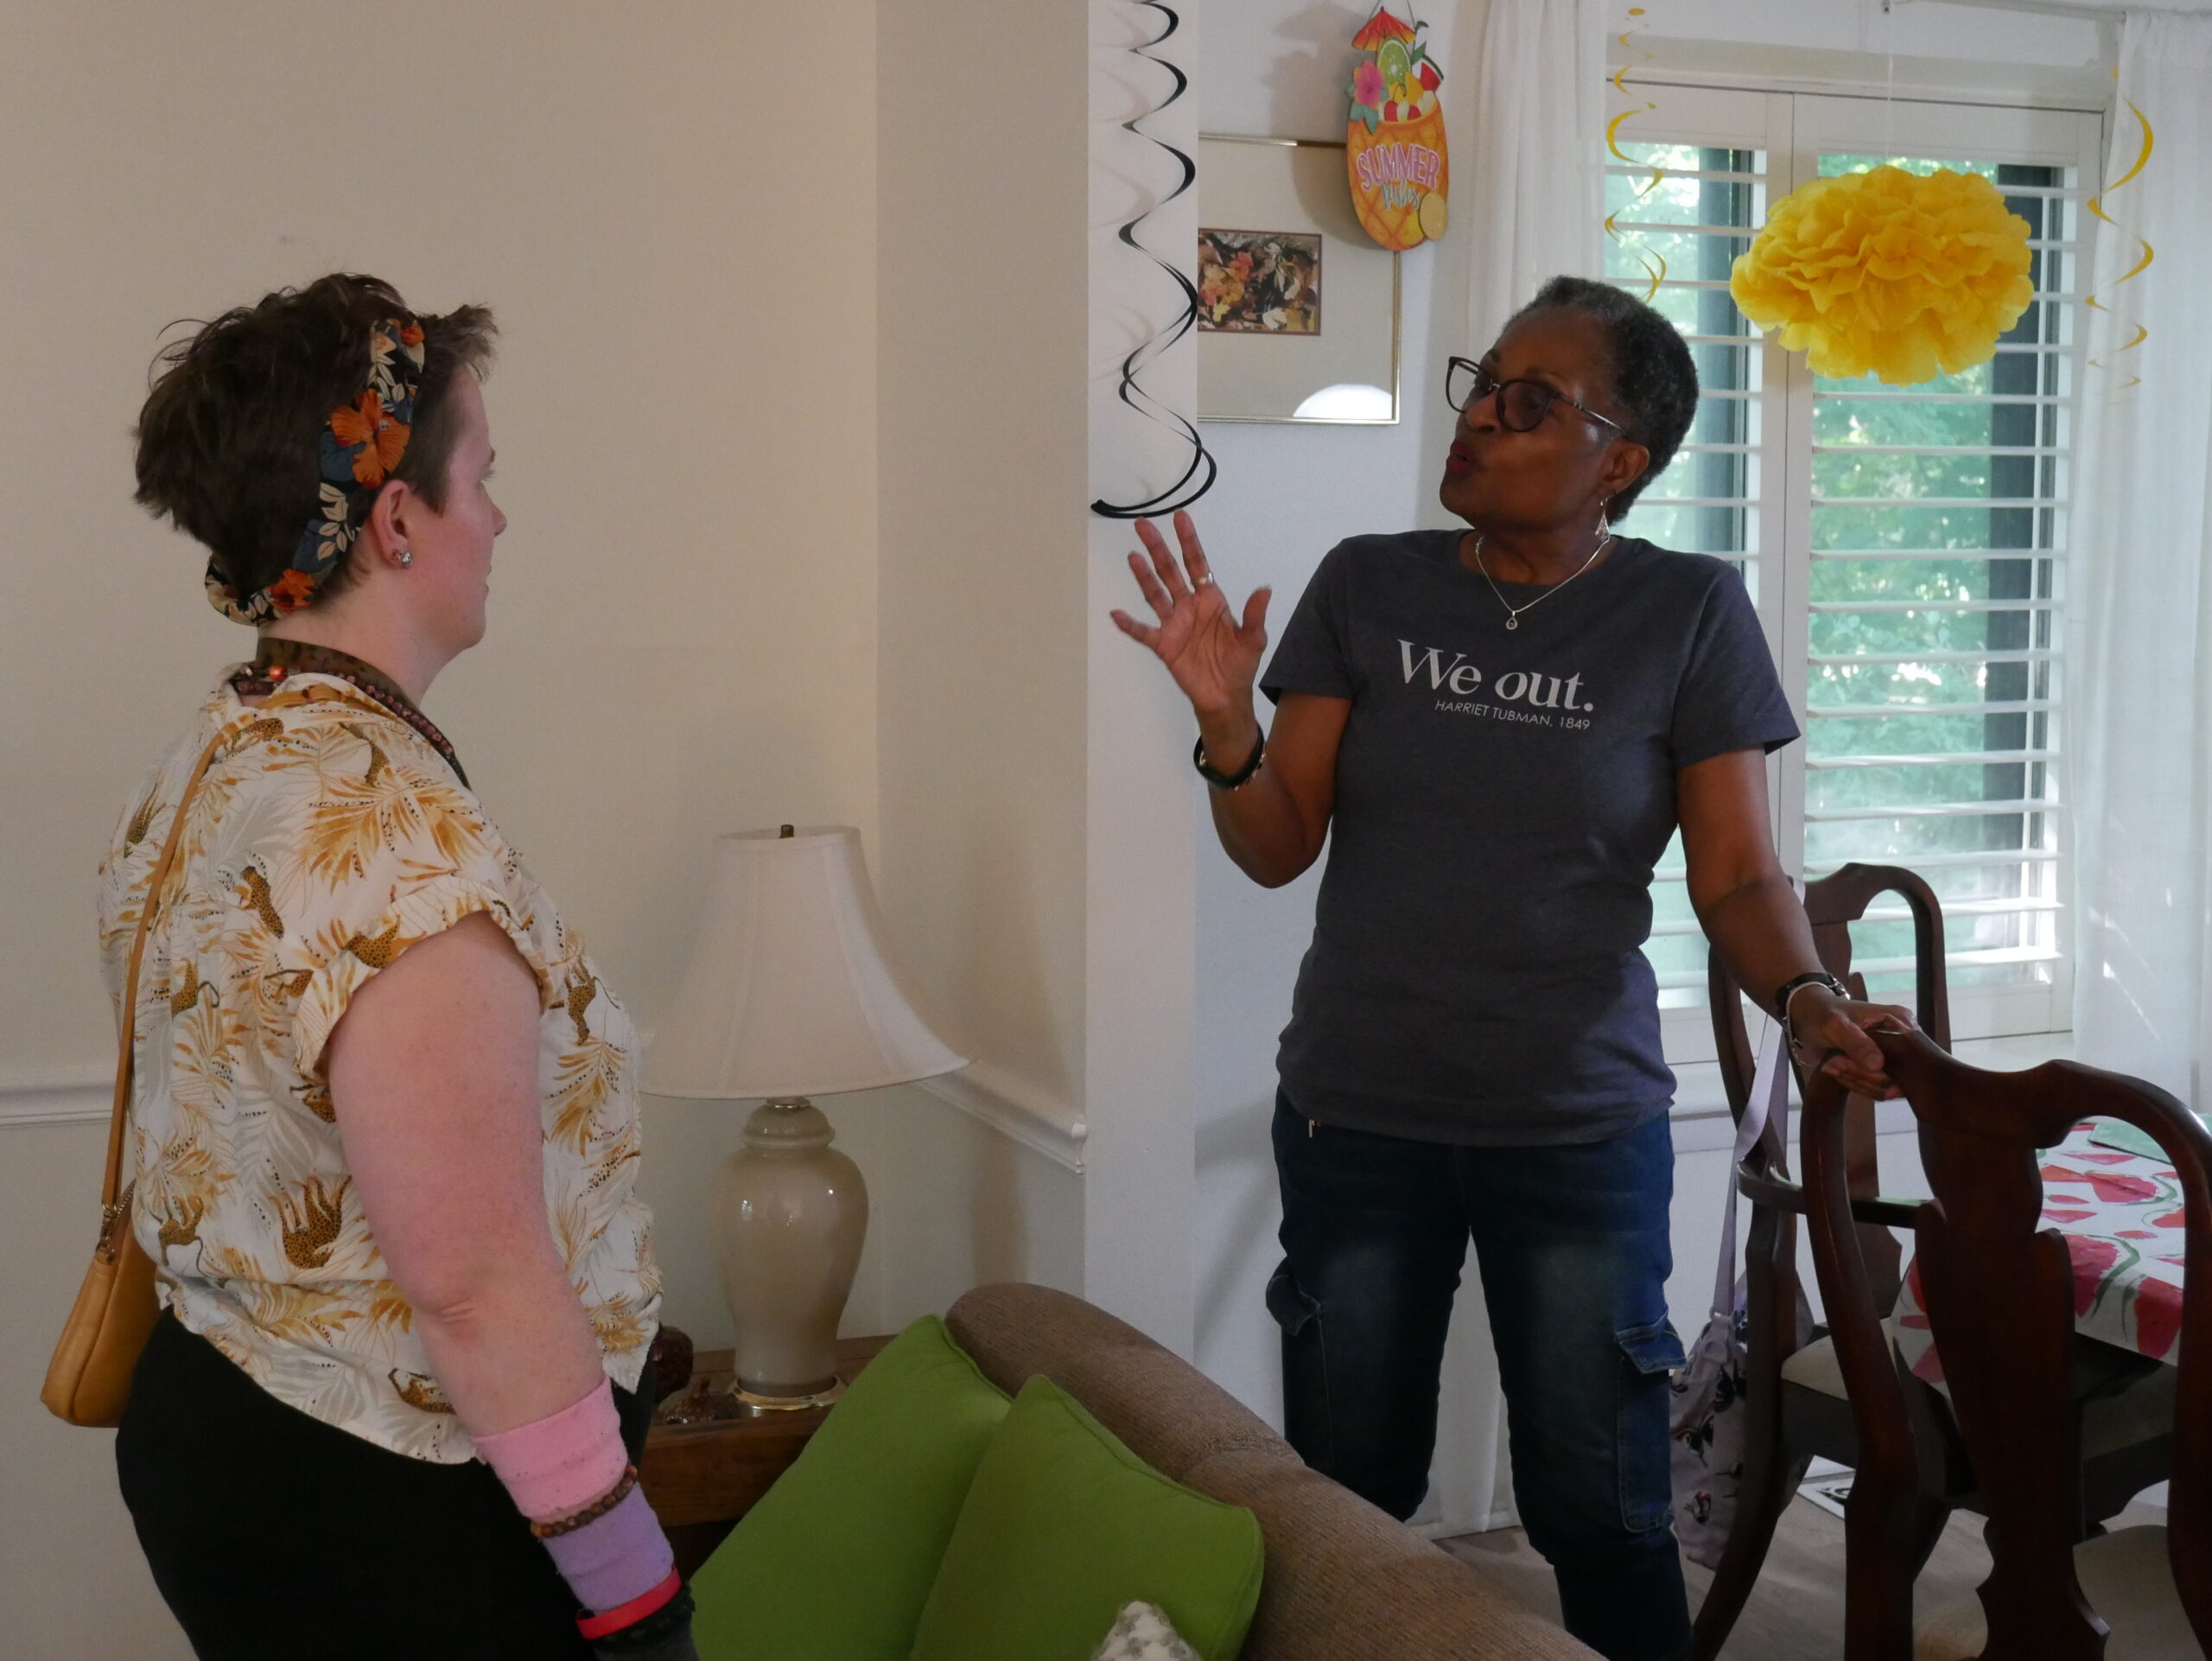 Gabriel Homes resident (left) with Marlene Stevens, residential counselor.